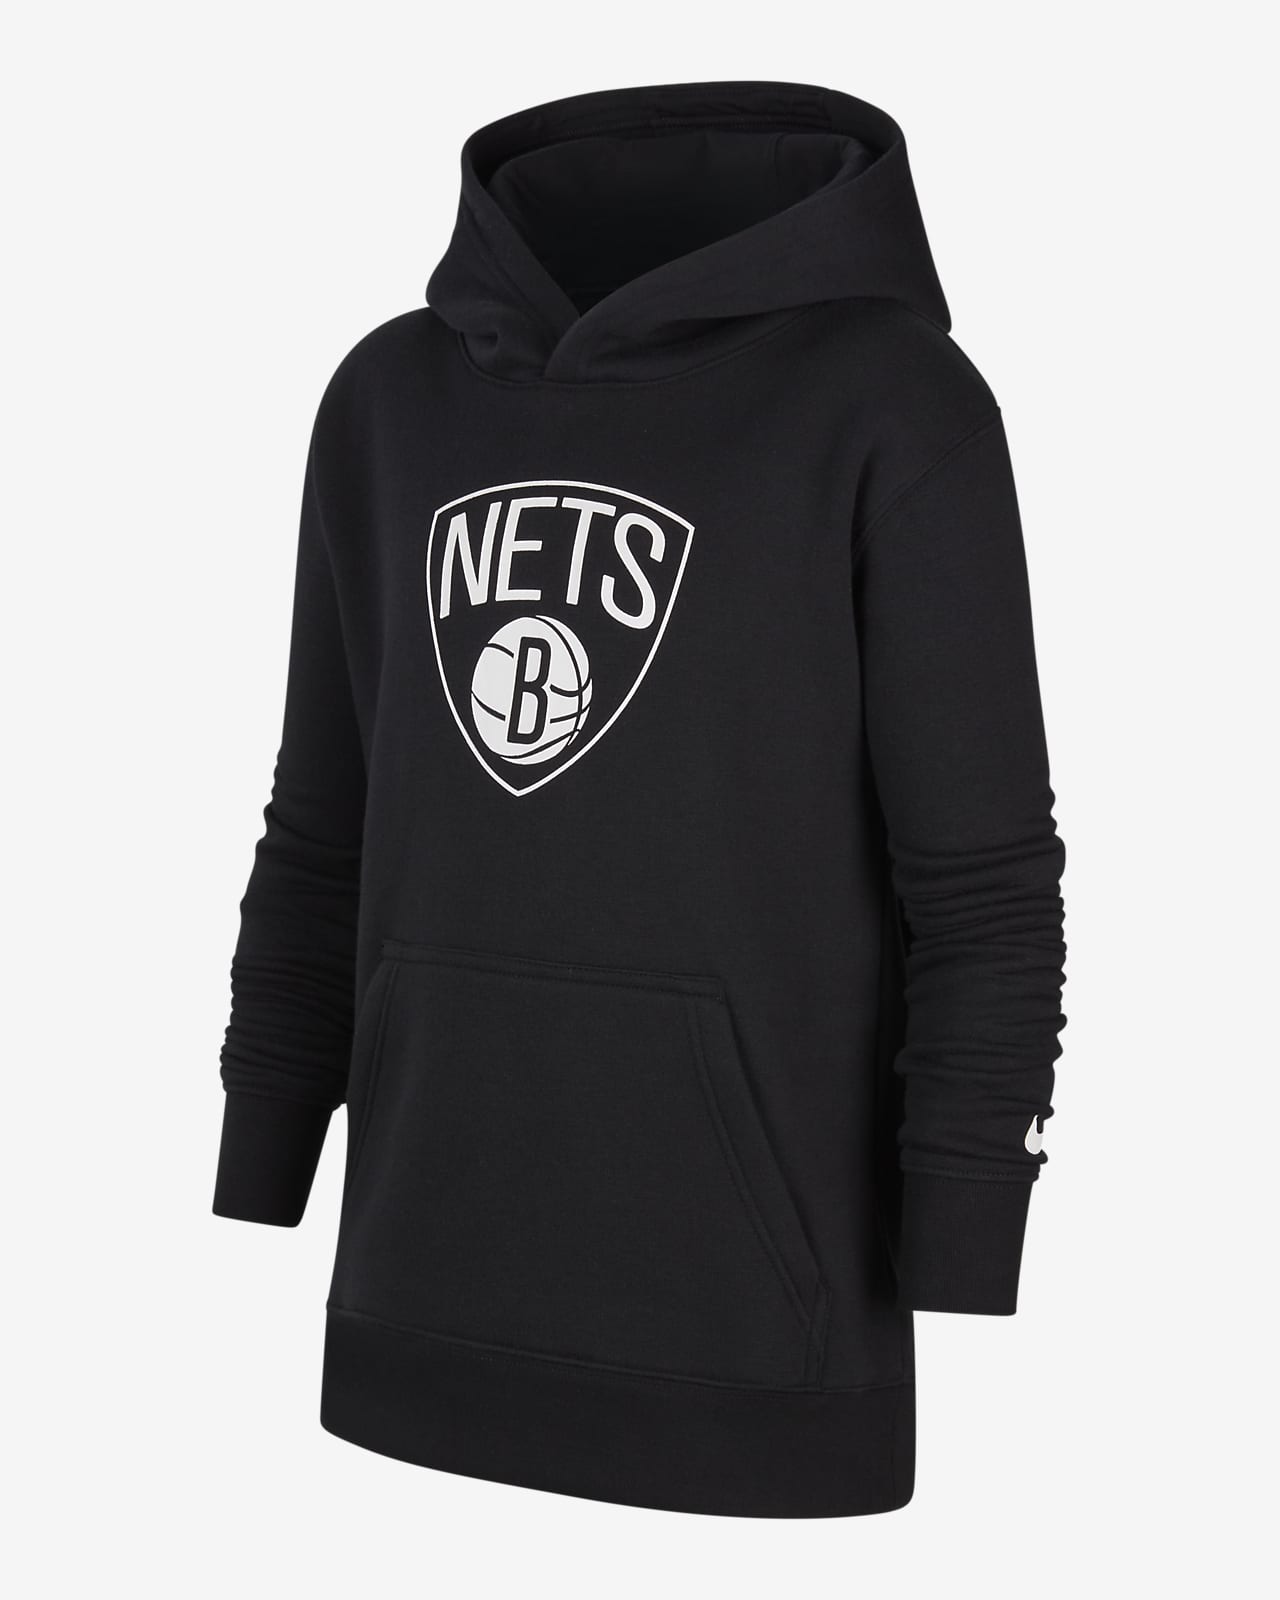 Flísová mikina Nike NBA Brooklyn Nets s kapucí pro větší děti